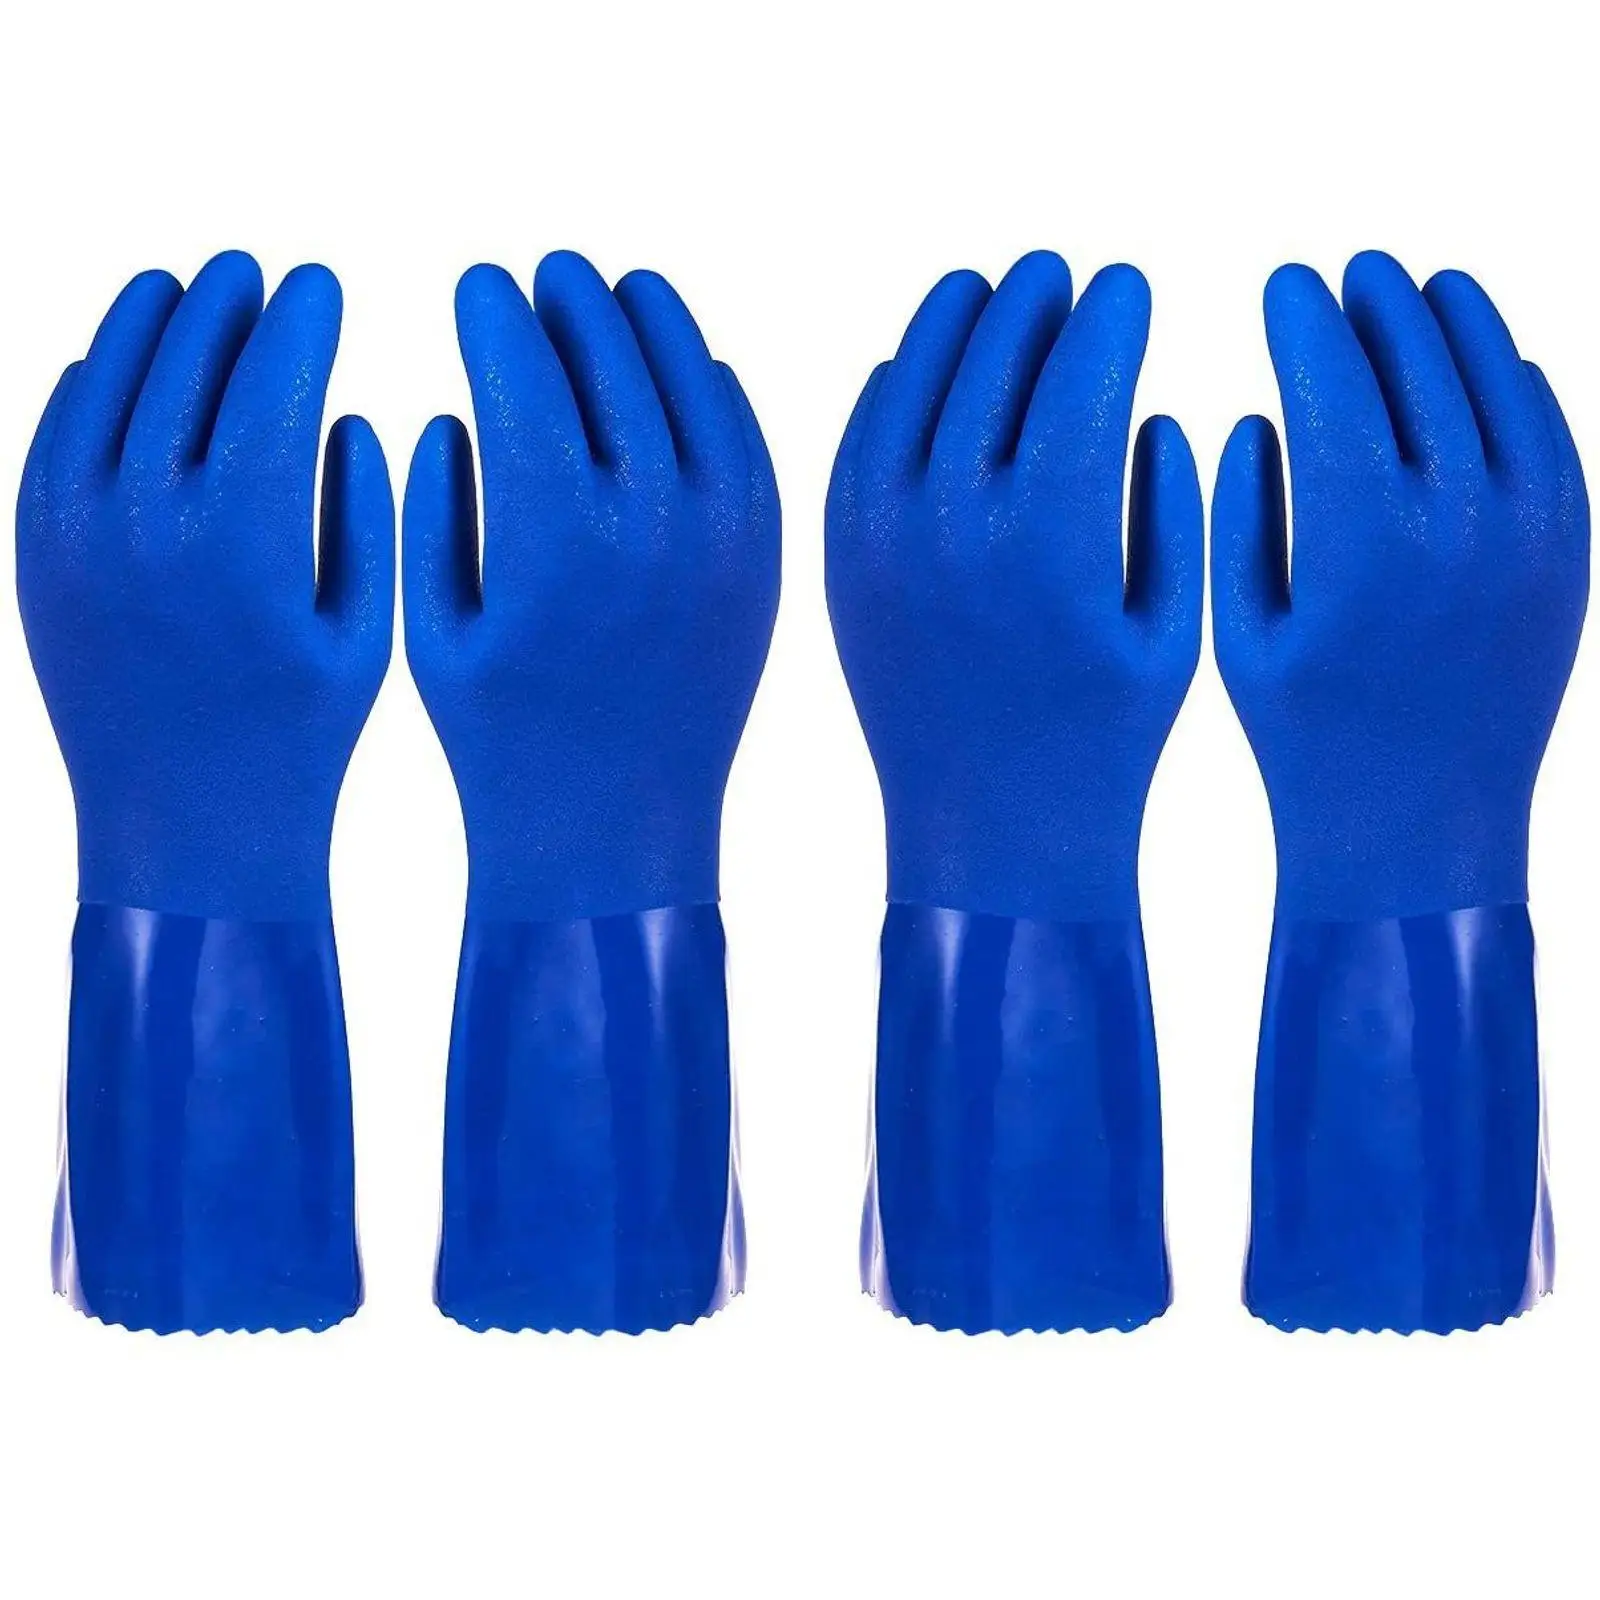 2 упаковки перчаток для мытья посуды – Многоразовые кухонные бытовые резиновые перчатки без латекса для уборки и мытья посуды - Синий, большой размер L